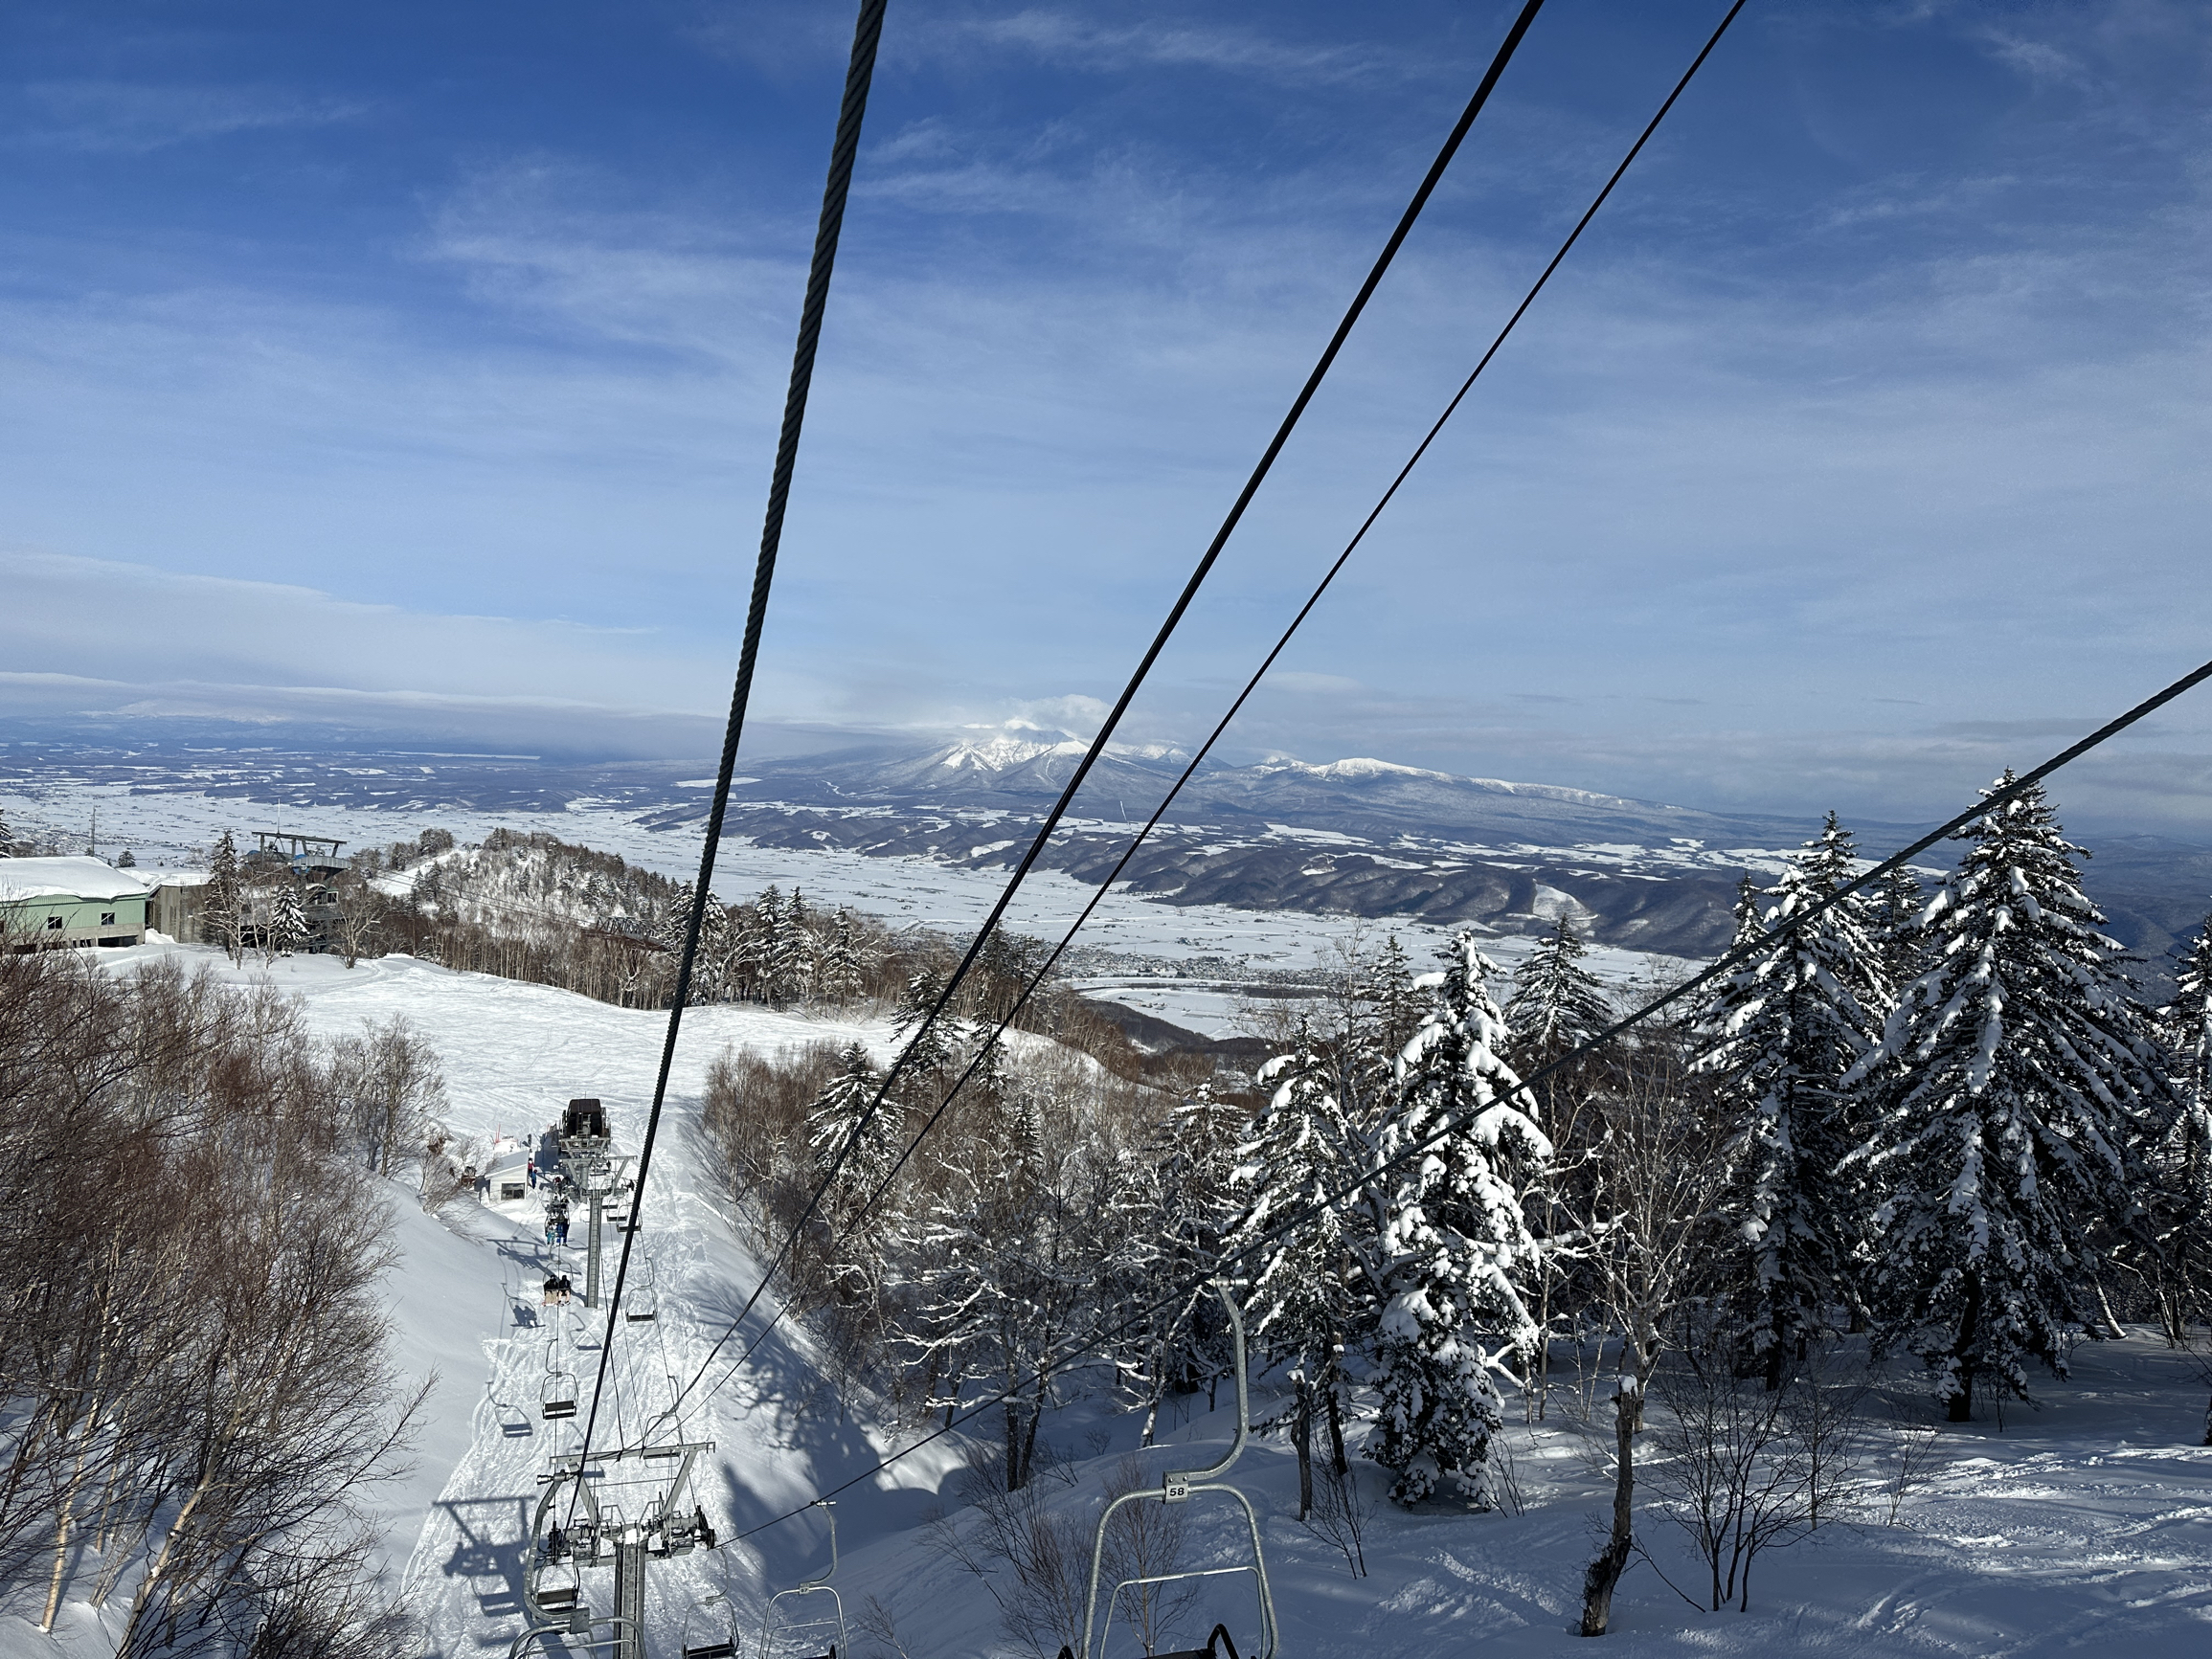 日本小众滑雪场富良野滑雪场人少道宽雪粉